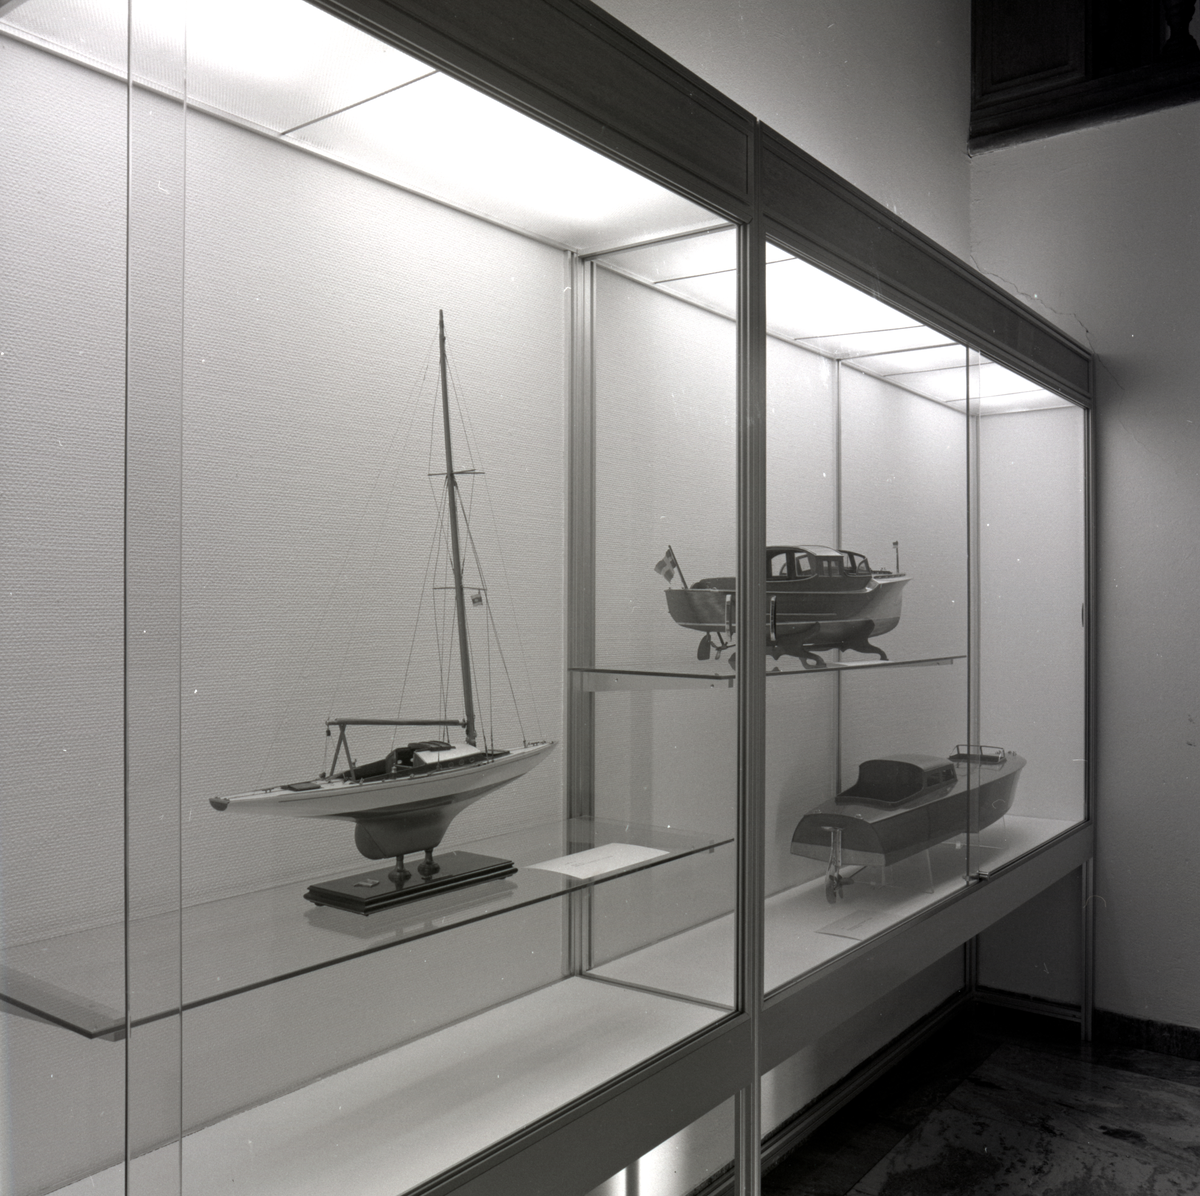 Utställning i trappmonter med fartygsmodeller av en sgelbåt och två mahognyracers.